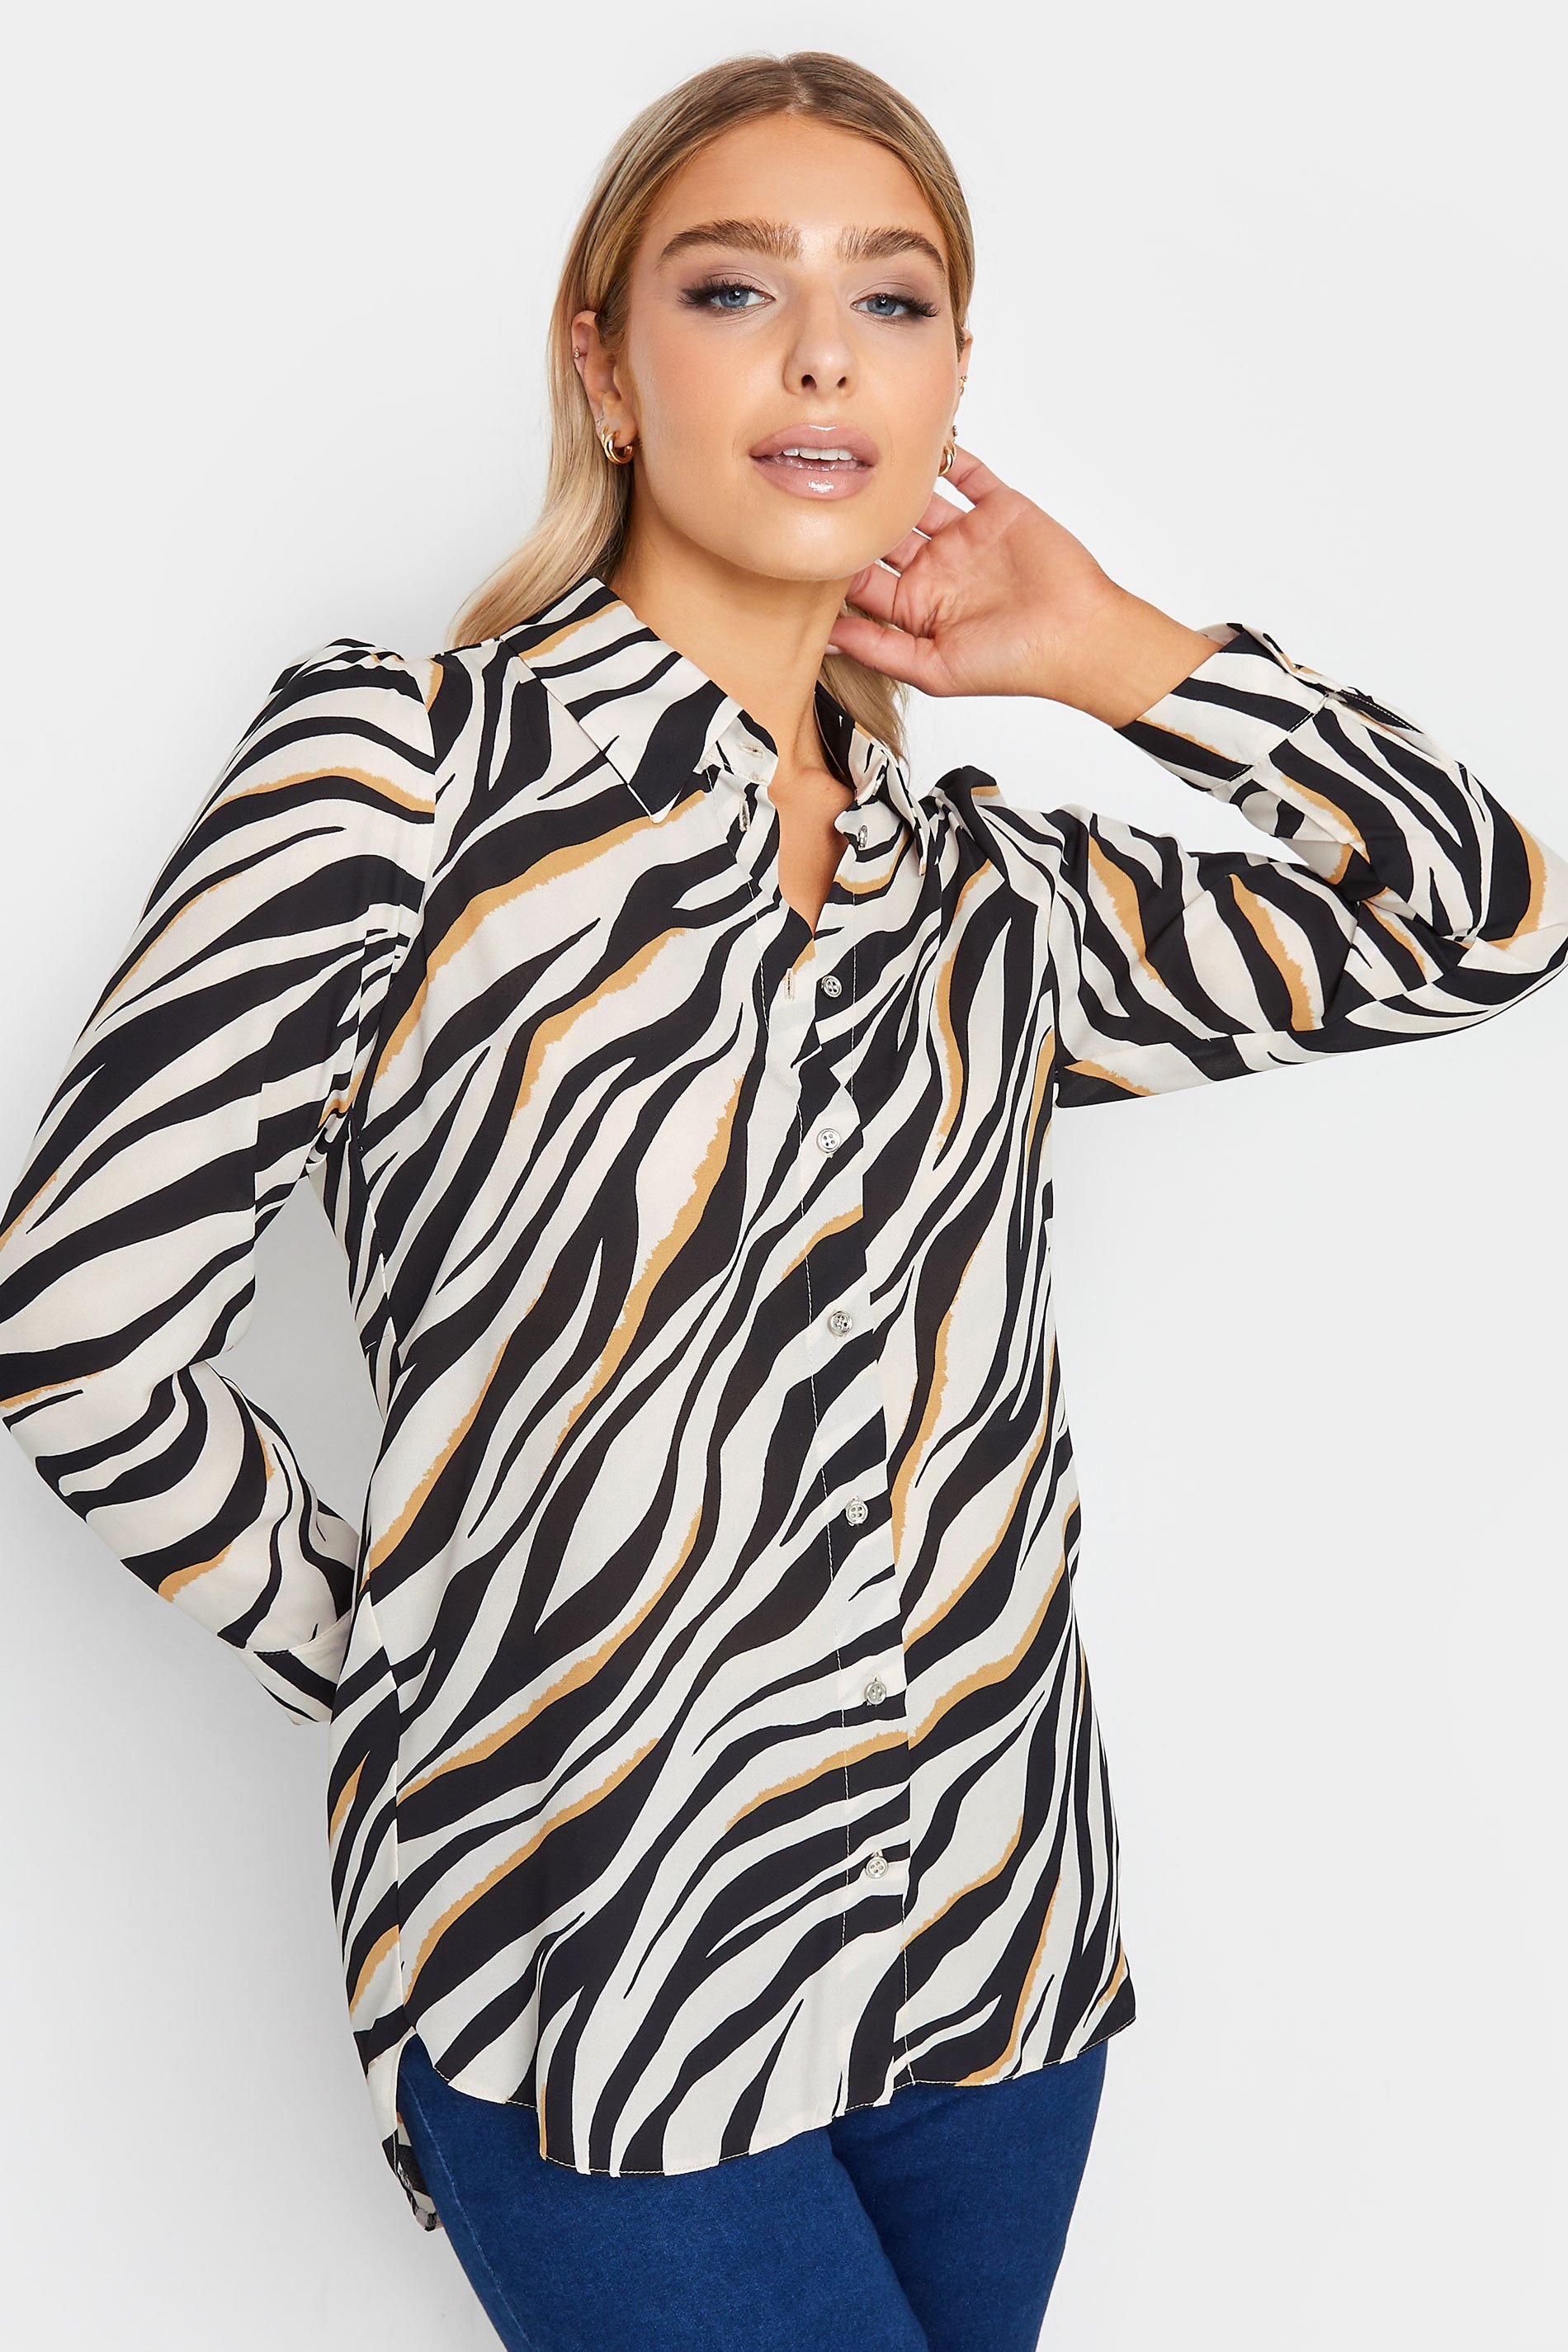 M&Co White Zebra Print Tunic Shirt | M&Co  1